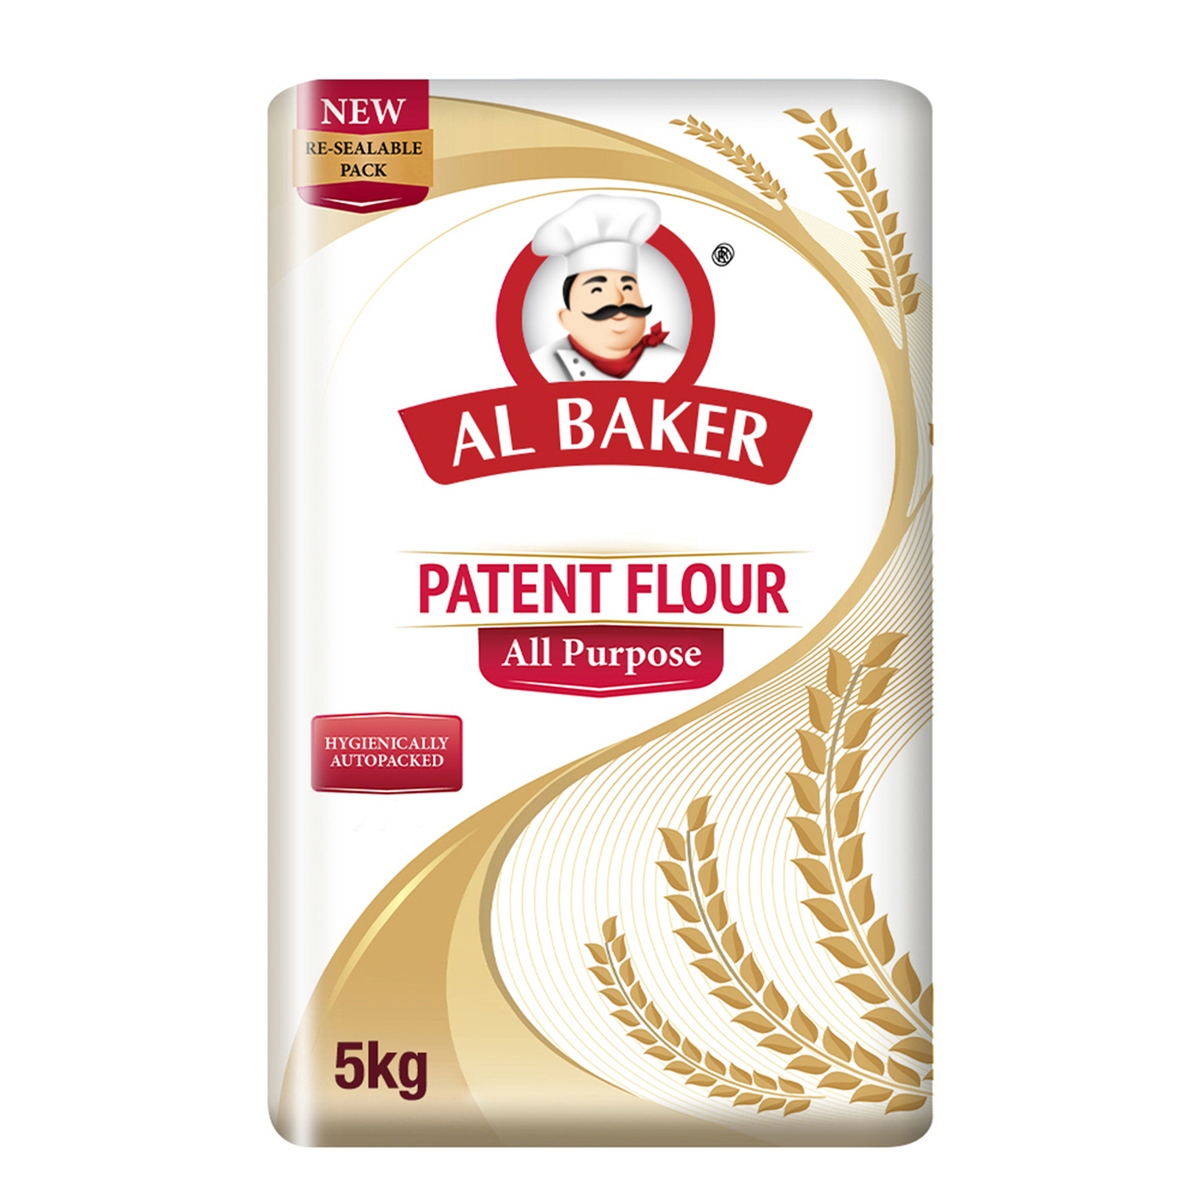 Al Baker All Purpose Patent Flour 5 kg